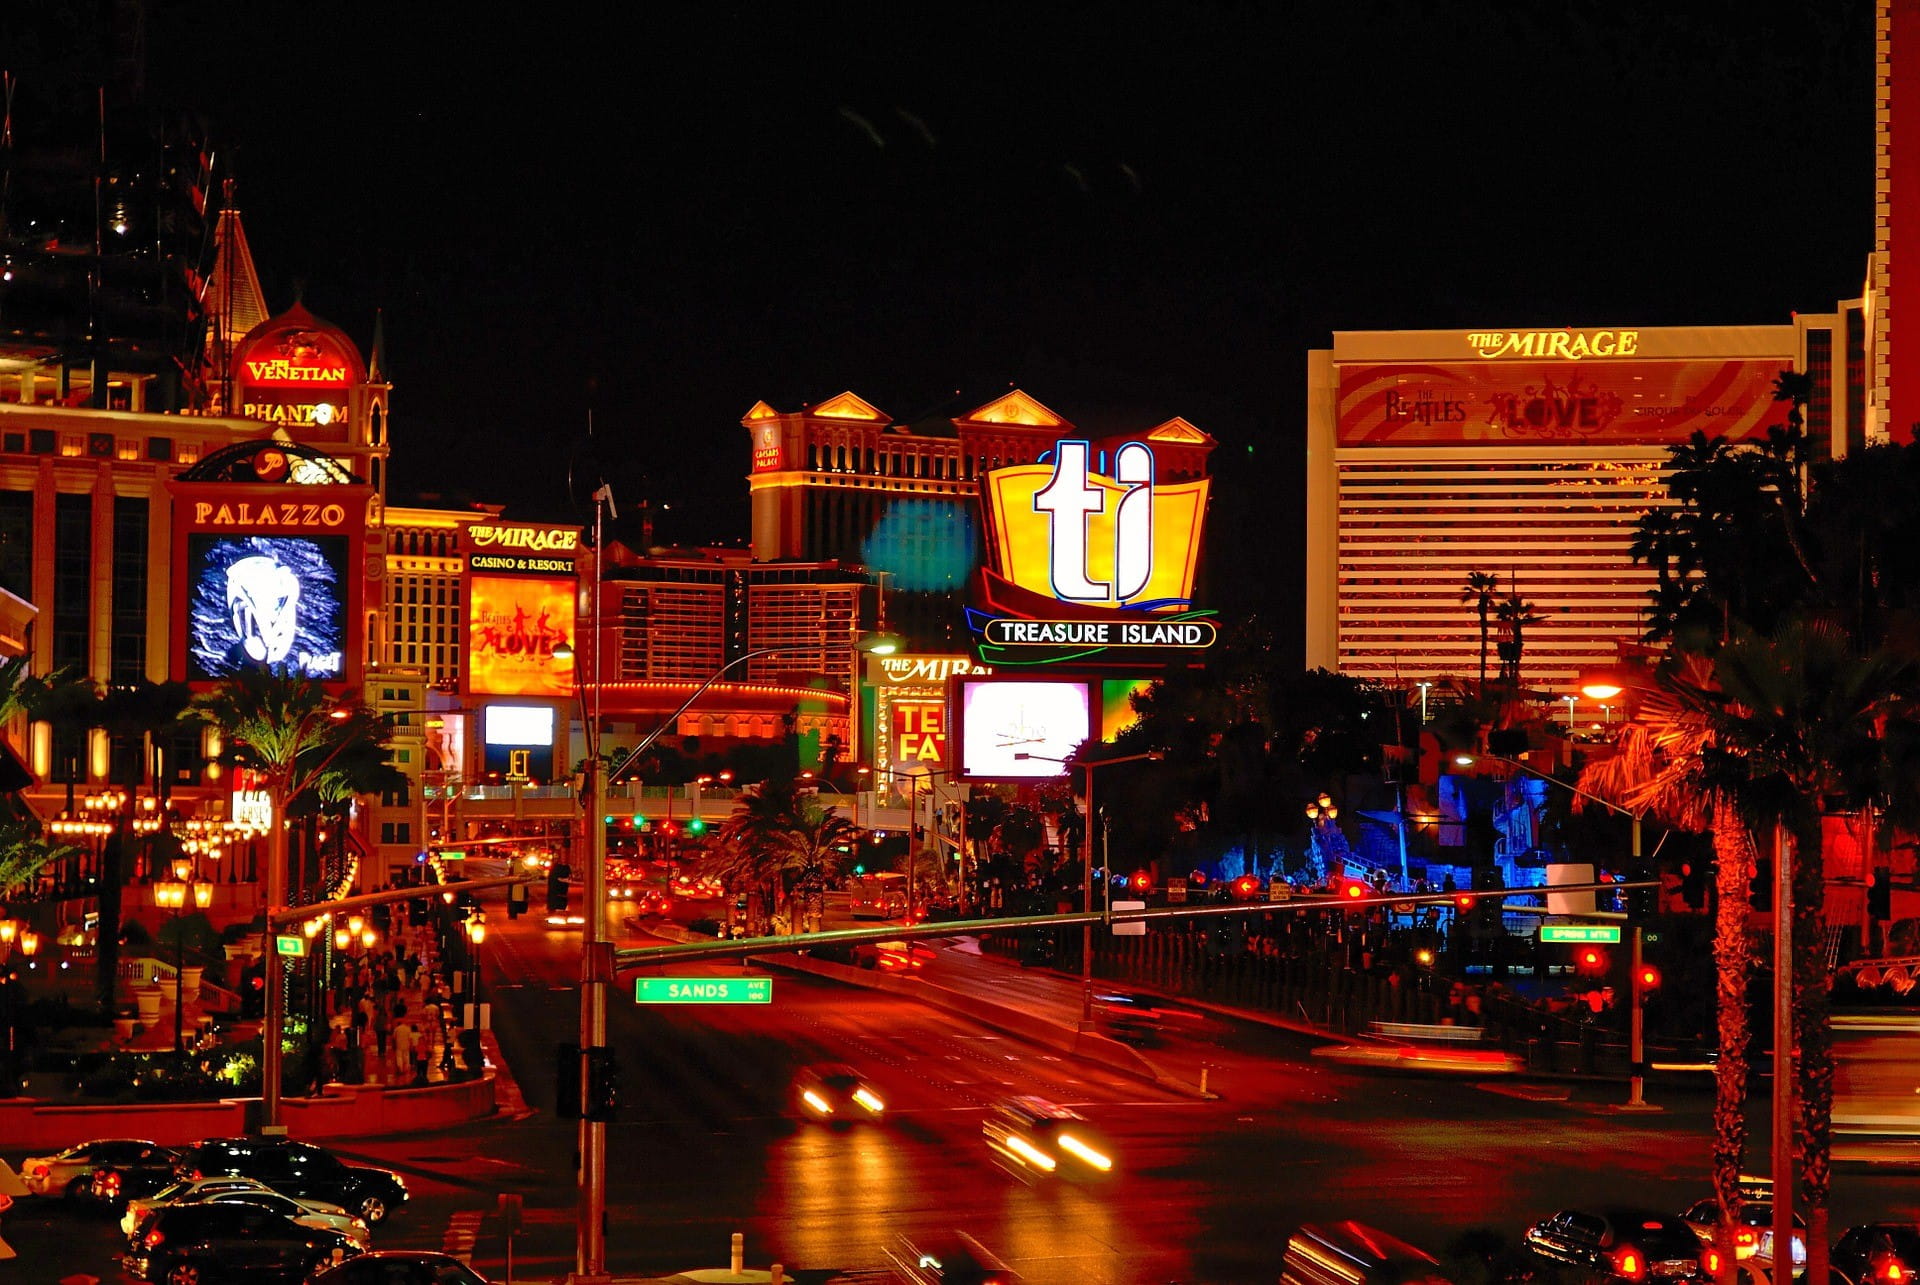 Die Casinos Palazzo, Venetian und Mirage von Las Vegas.